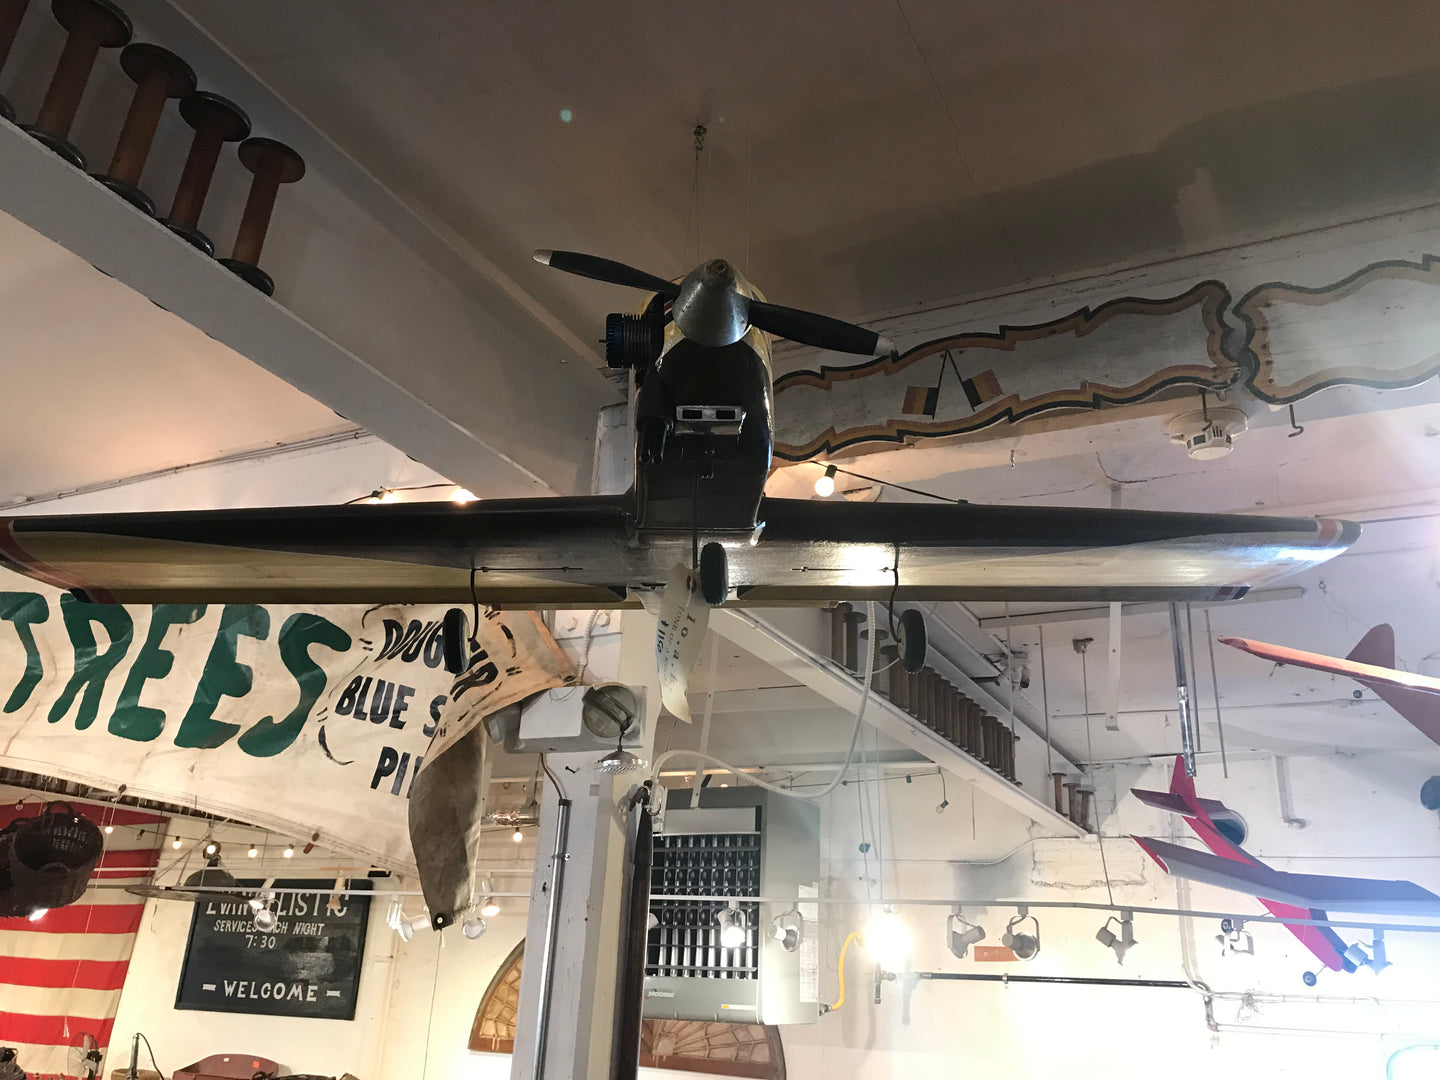 Vintage model Airplane